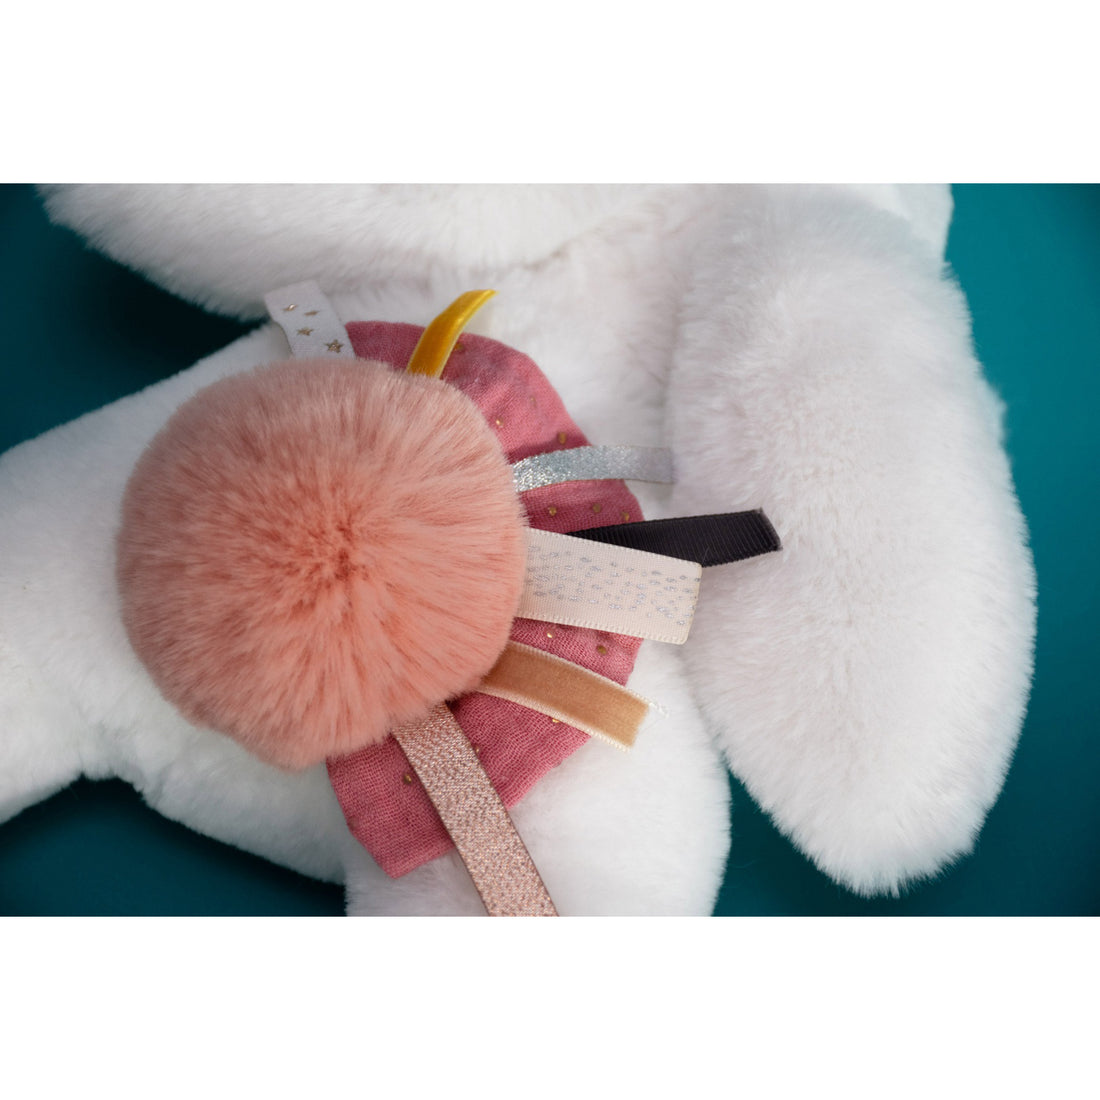 Doudou Et Compagnie - Bunny Stuffed Plush Animal with Pom Pom Tail Pink